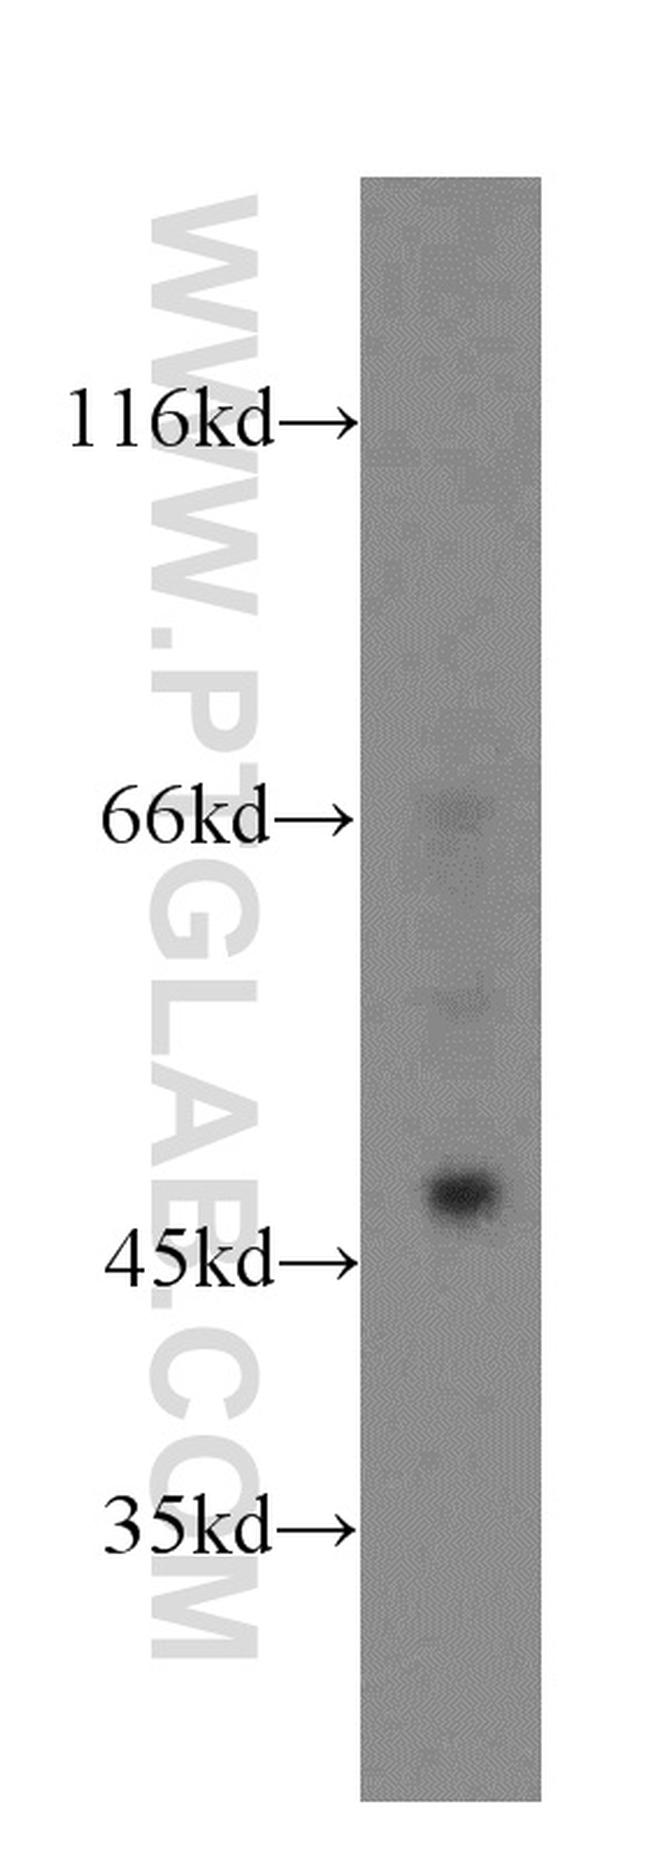 PHD2 Antibody in Western Blot (WB)